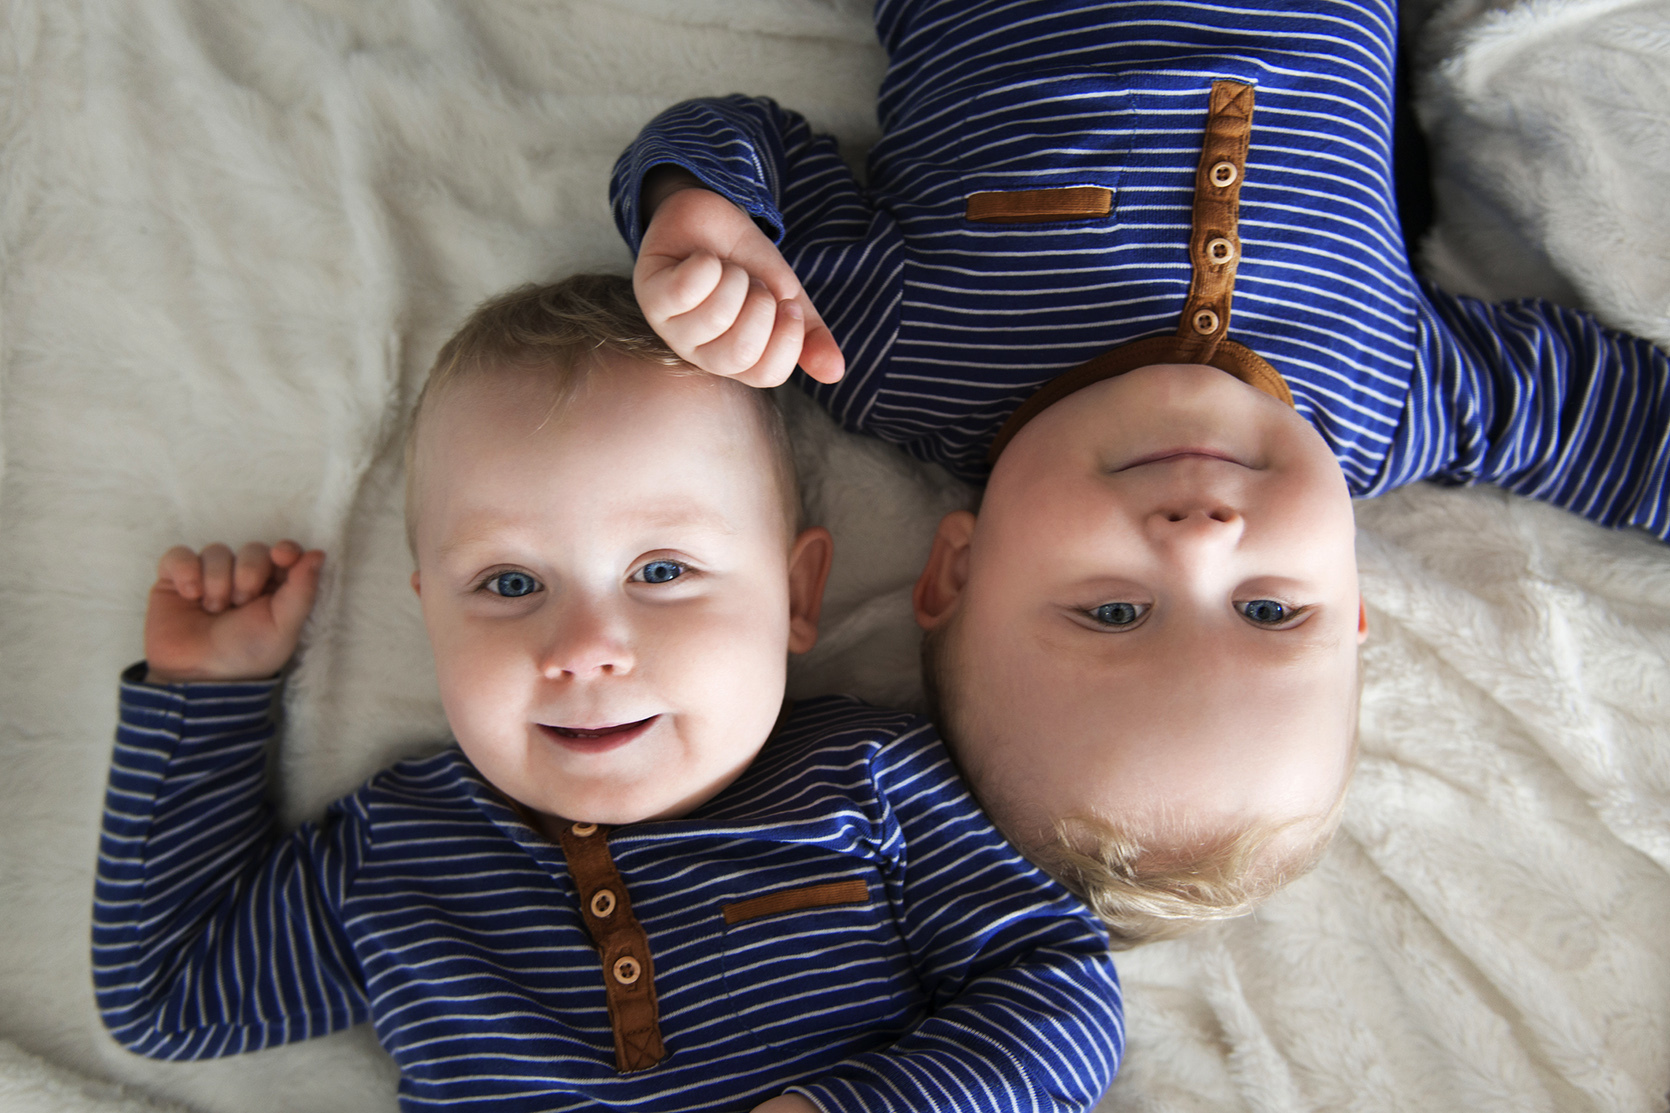 Bliźnięta jednojajowe a bliźnięta dwujajowe –jakie są różnice?